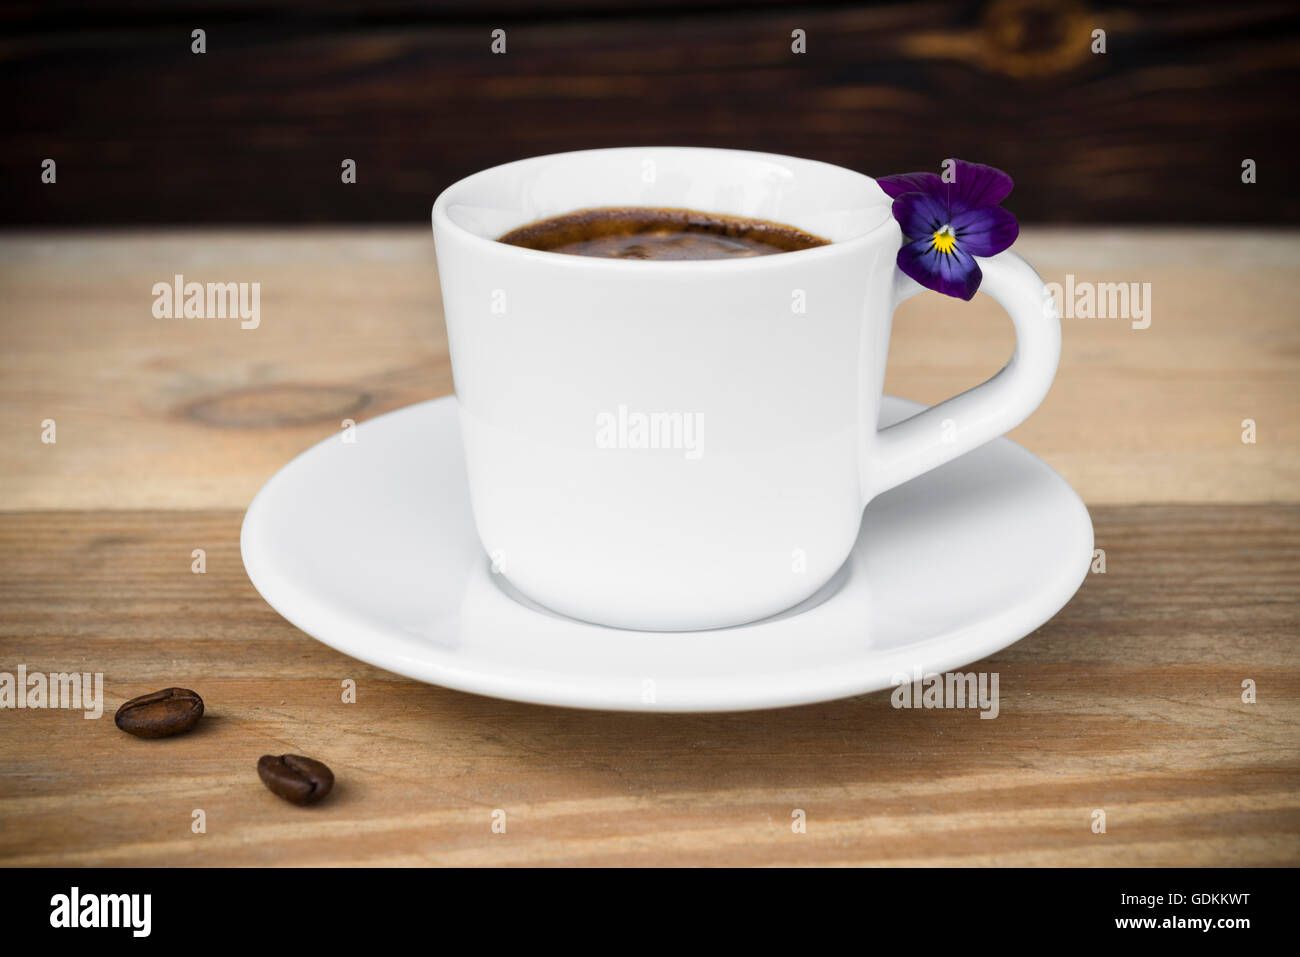 Taza de café espresso con granos de café y las flores dispuestas en la vieja mesa de madera rústica Foto de stock